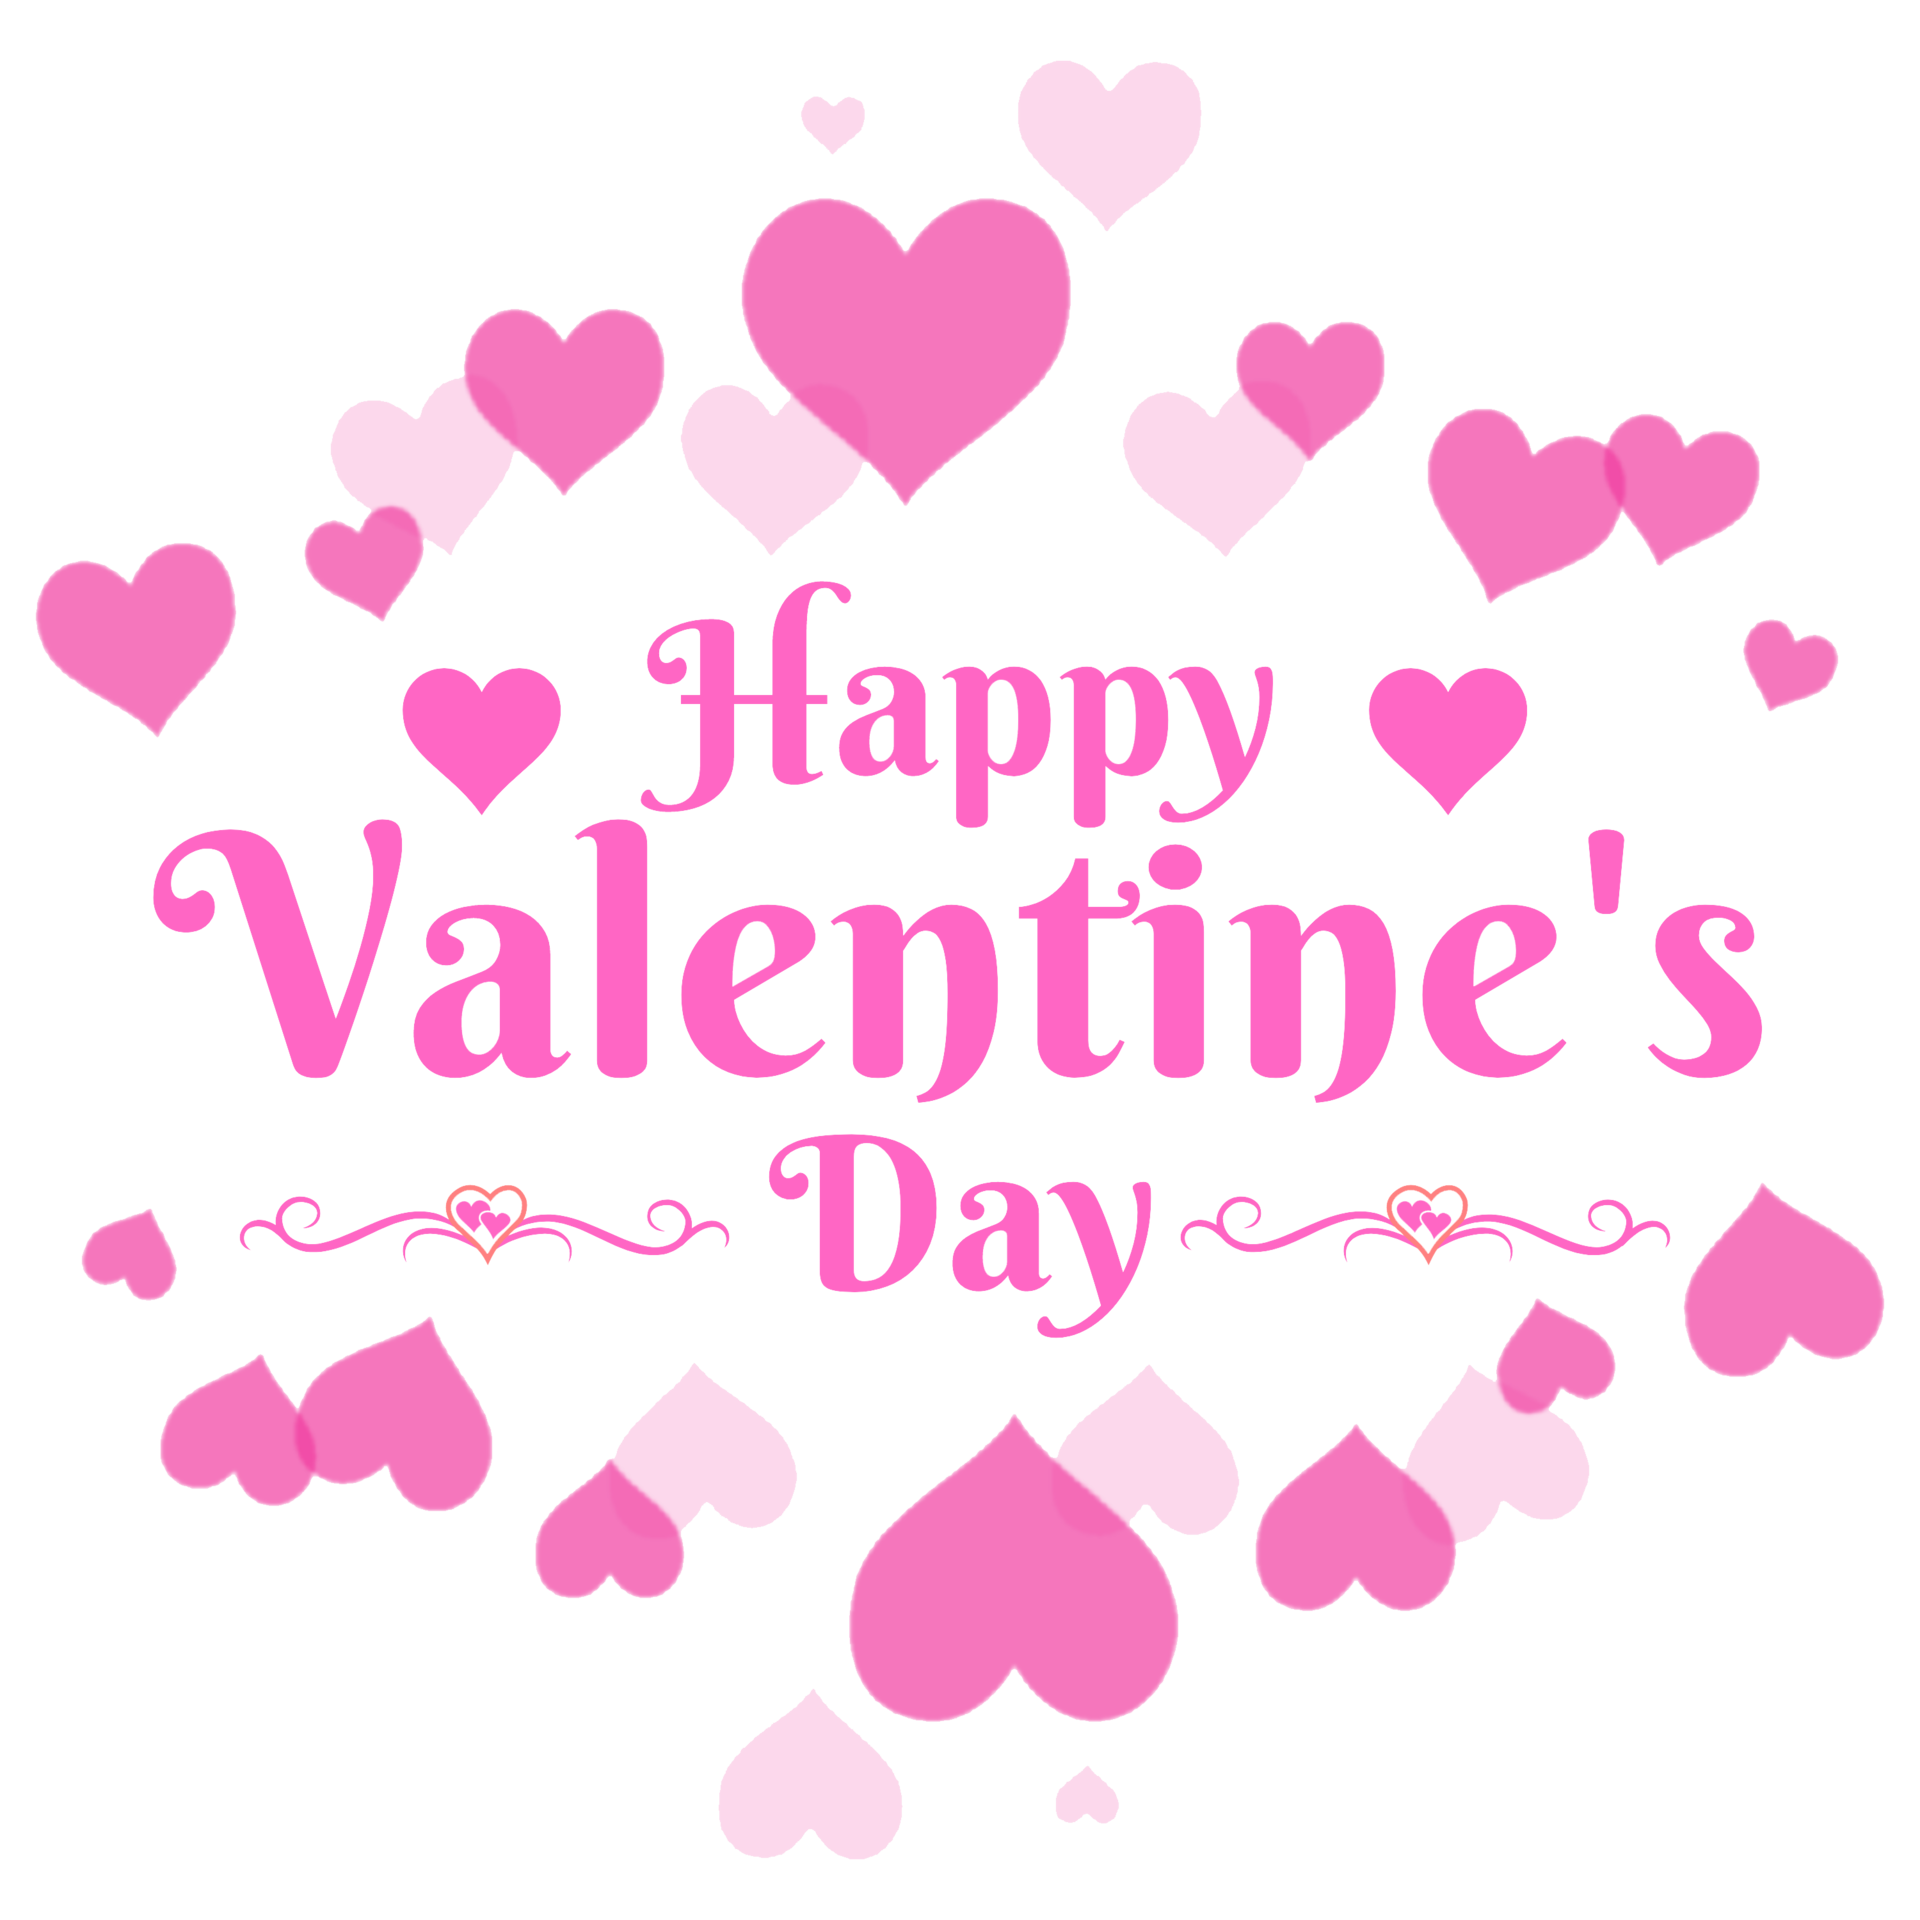 Chúc mừng ngày Valentine vui vẻ cùng với trang trí trái tim miễn phí để tạo nên những dòng chữ độc đáo và ý nghĩa. Với văn bản được thiết kế đặc biệt, hãy truyền tải tình yêu của bạn đến người mà bạn yêu thương.